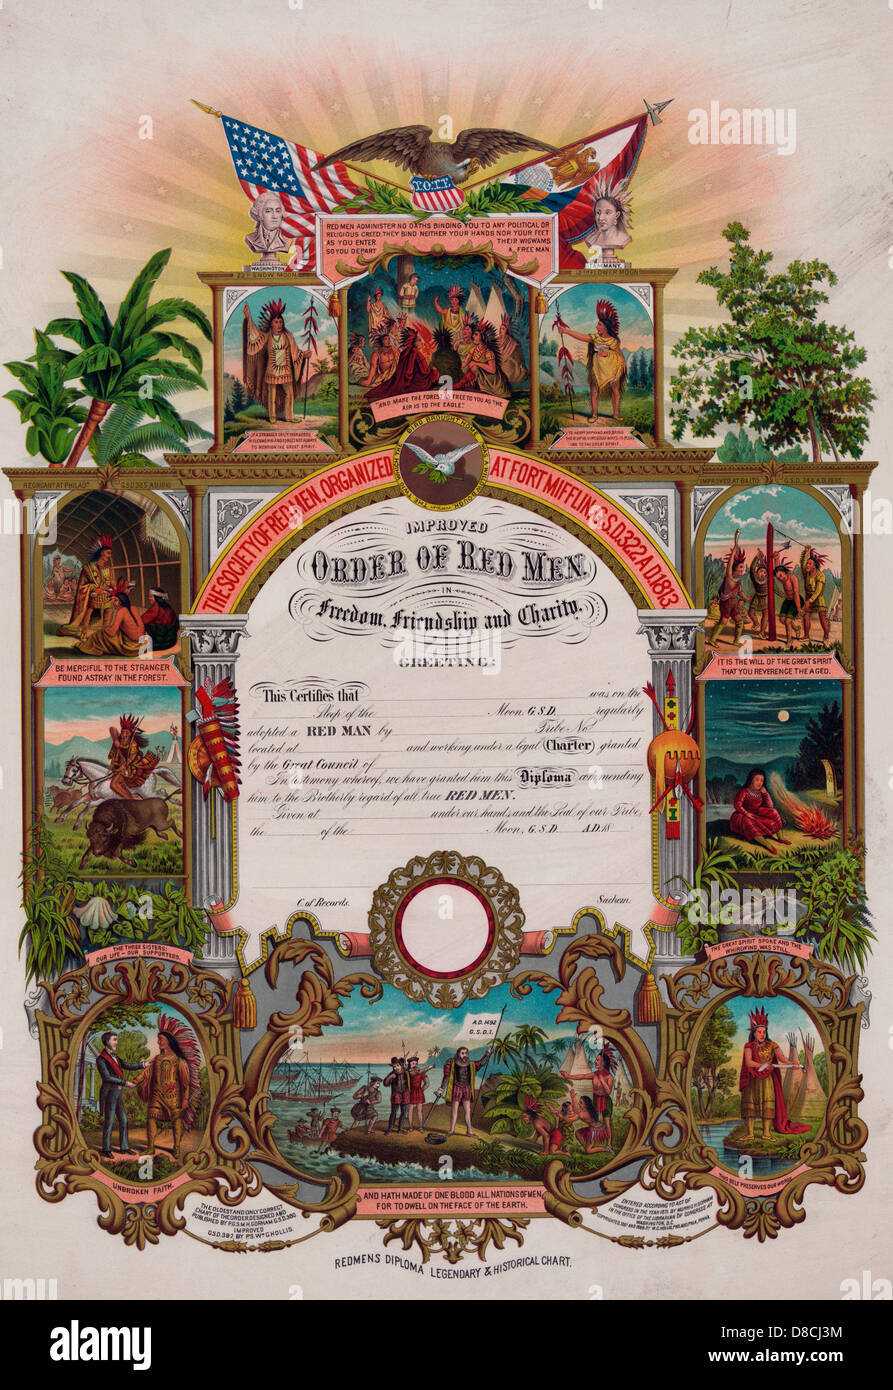 Reihenfolge der roten Männer - ein Zertifikat oder eine "Redmens Diplom legendär & historische Chart" für die Gesellschaft der roten Männer, umgeben von Vignetten von Szenen aus einheimischen Leben und Kultur, ca. 1889 Stockfoto